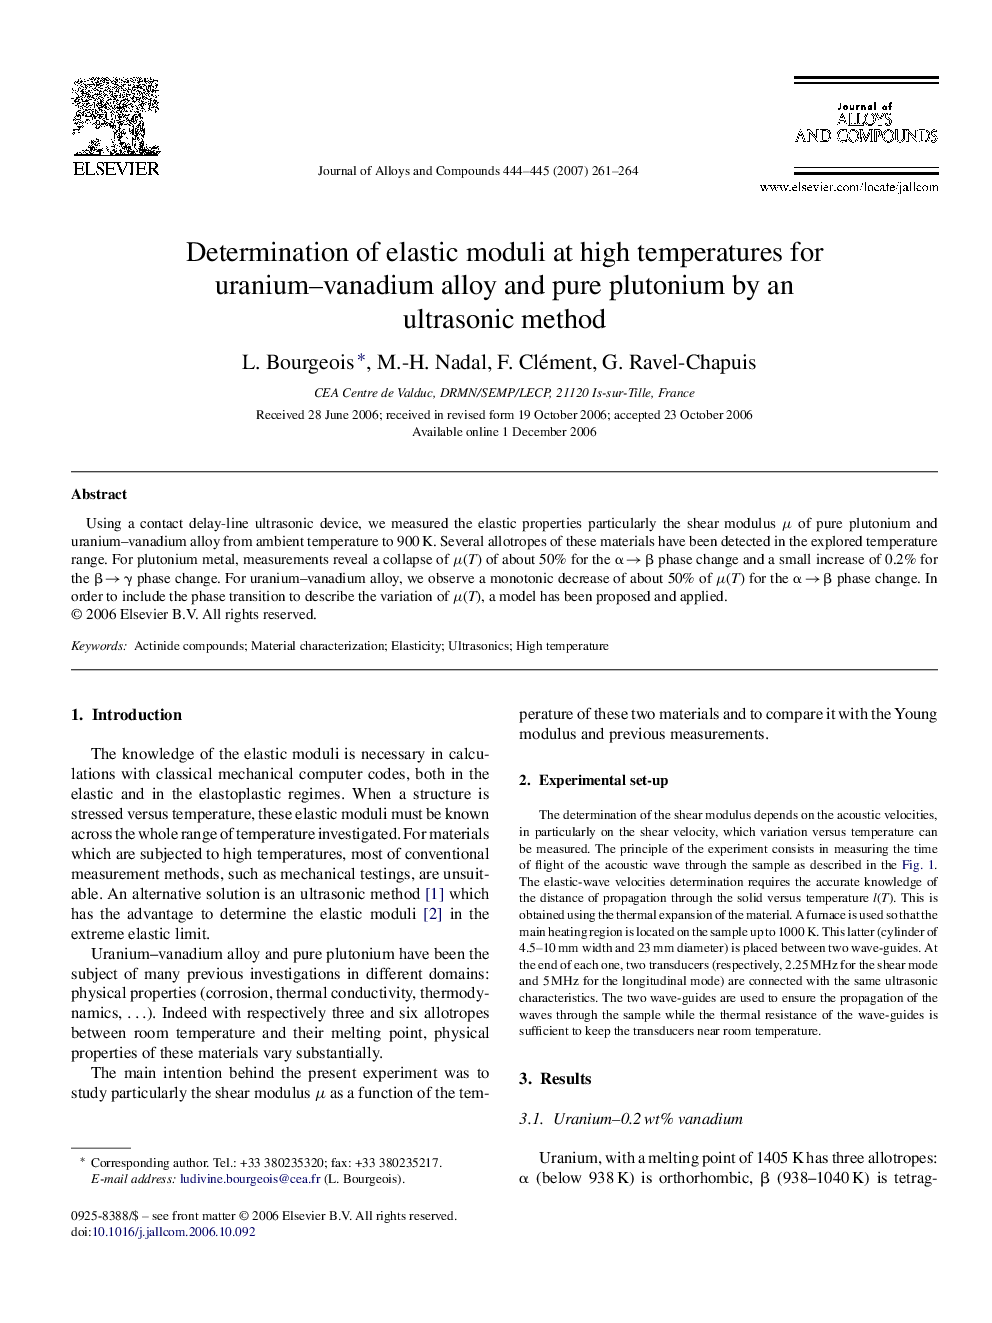 Determination of elastic moduli at high temperatures for uranium–vanadium alloy and pure plutonium by an ultrasonic method